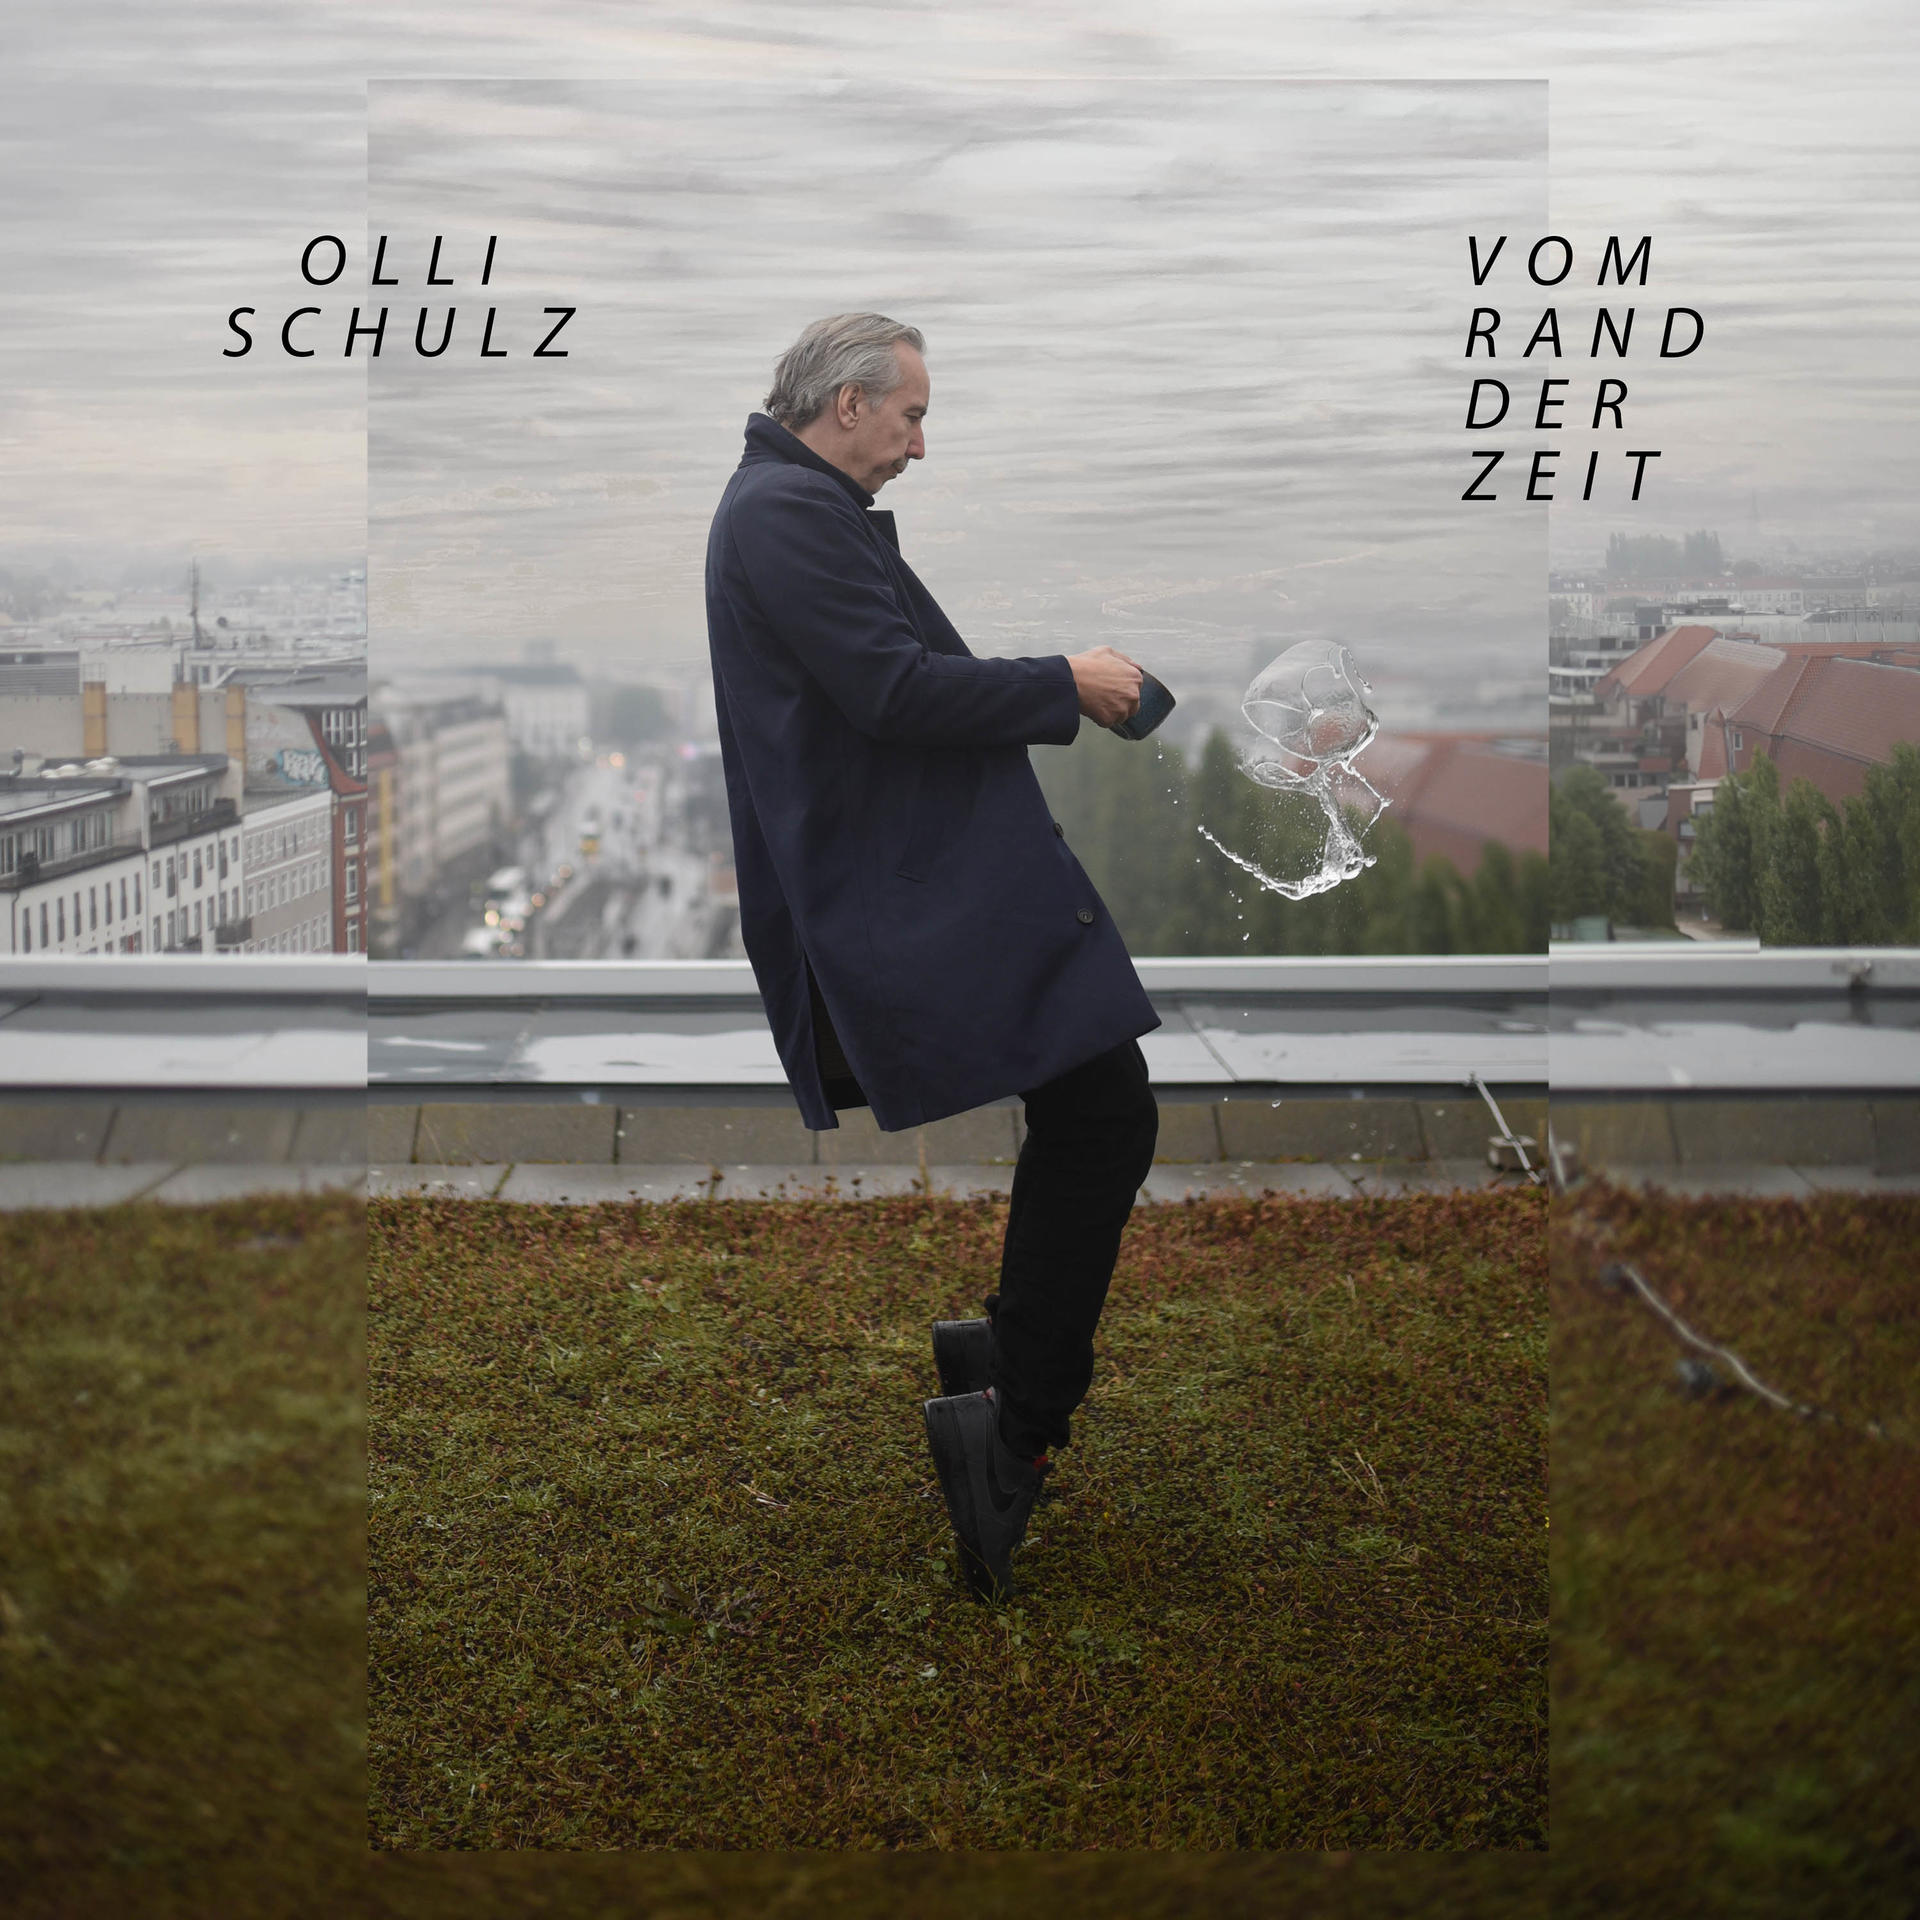 Olli Schulz - Vom Rand - der (Vinyl) Zeit